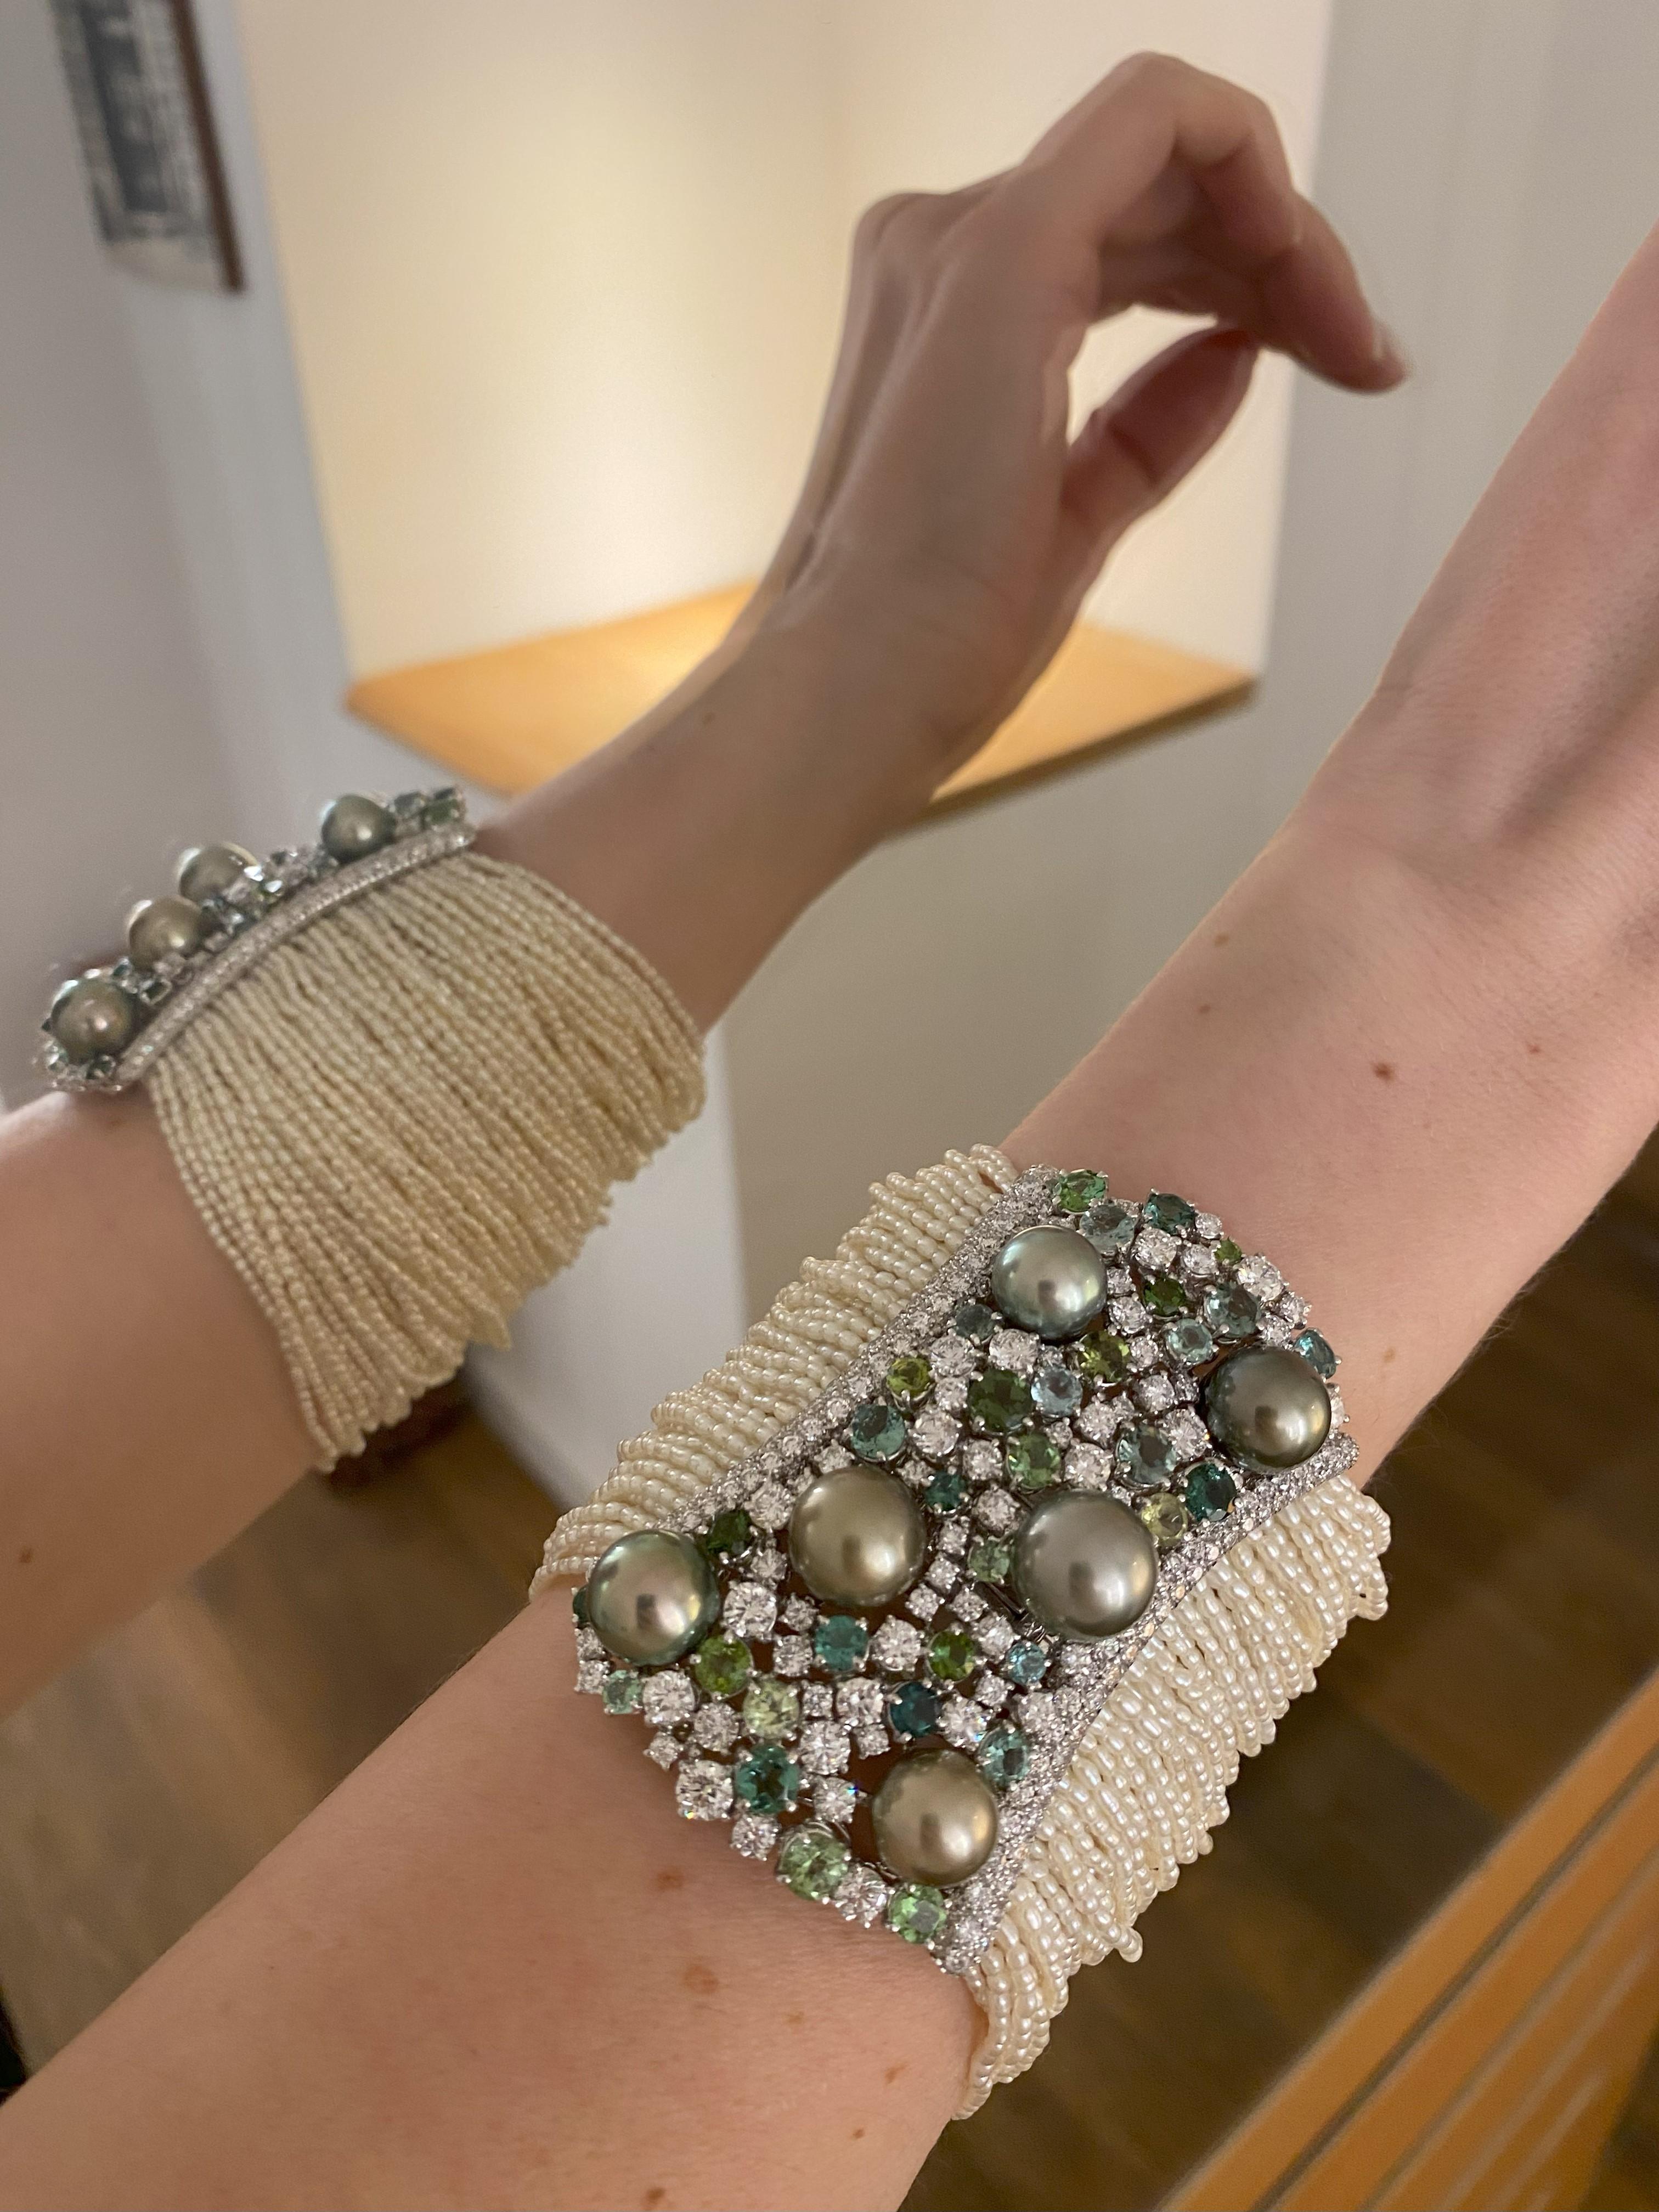 Présentant un chef-d'œuvre réalisé par le célèbre joaillier italien Fulvio Maria Scavia, ce bracelet témoigne du savoir-faire exceptionnel des artisans italiens. Plongez dans l'allure de cette pièce exquise, où l'éclat vert profond des tourmalines